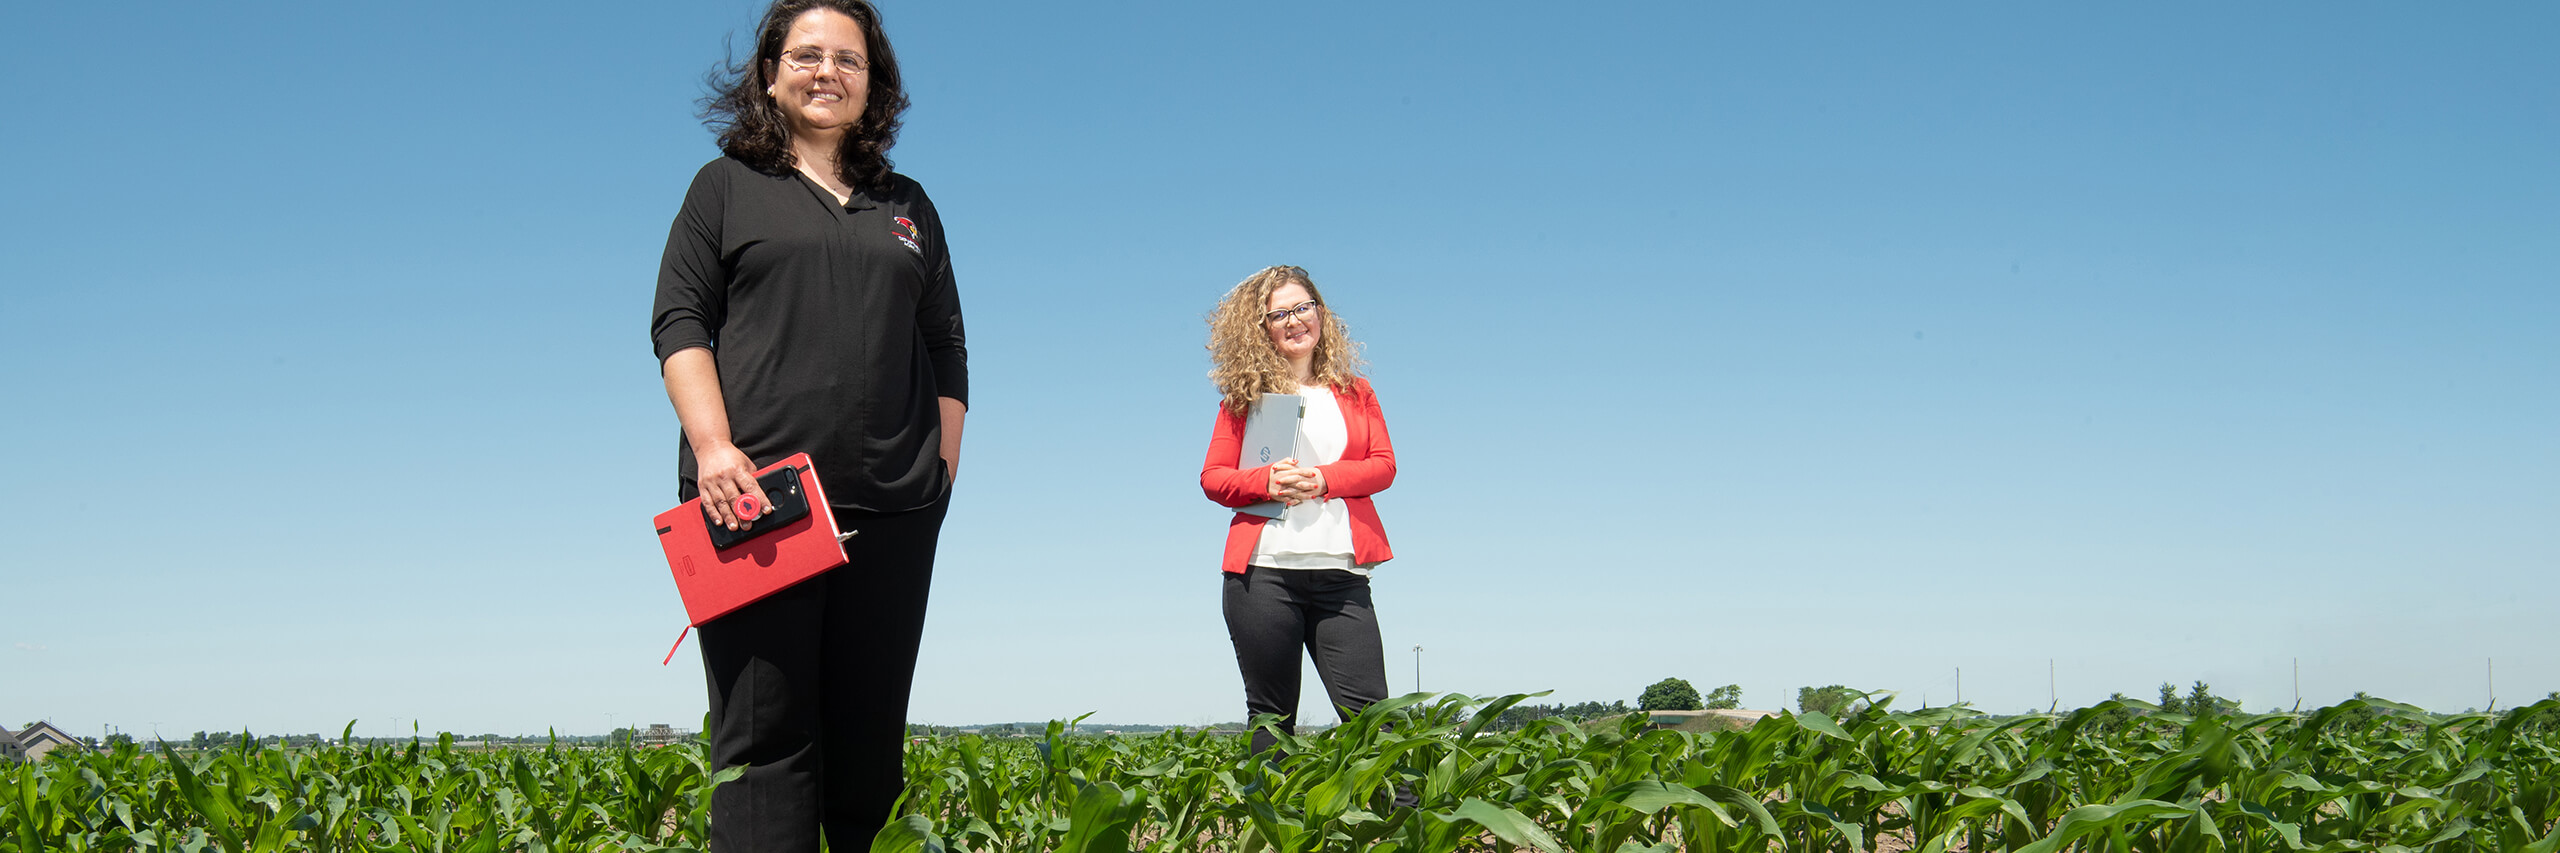 Staff posing in a corn field.